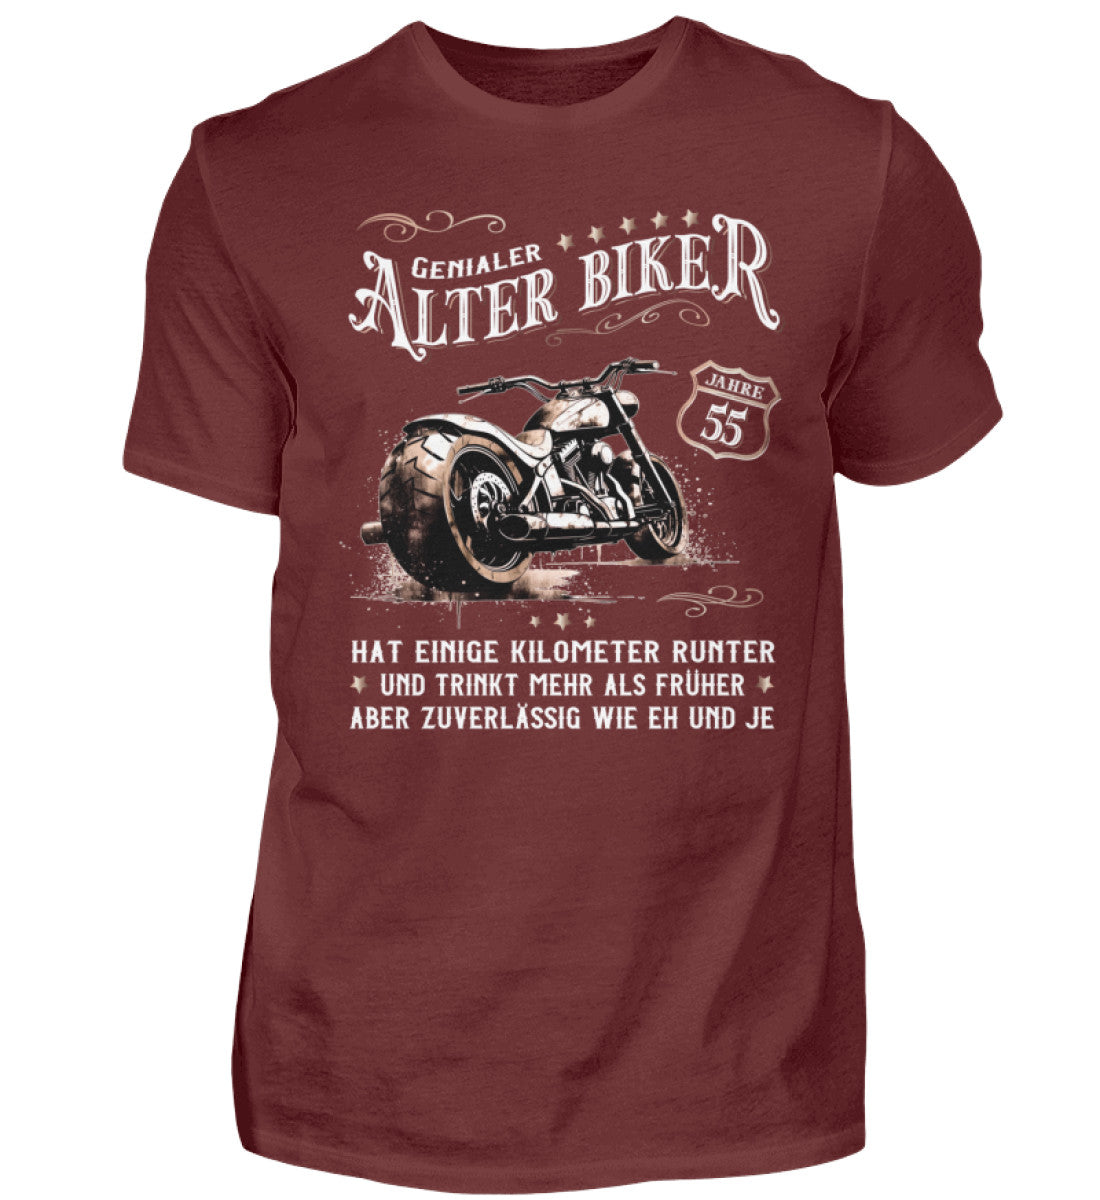 Ein Biker T-Shirt zum Geburtstag für Motorradfahrer von Wingbikers mit dem Aufdruck, Alter Biker - 55 Jahre - Einige Kilometer runter, trinkt mehr - aber zuverlässig wie eh und je - in weinrot.